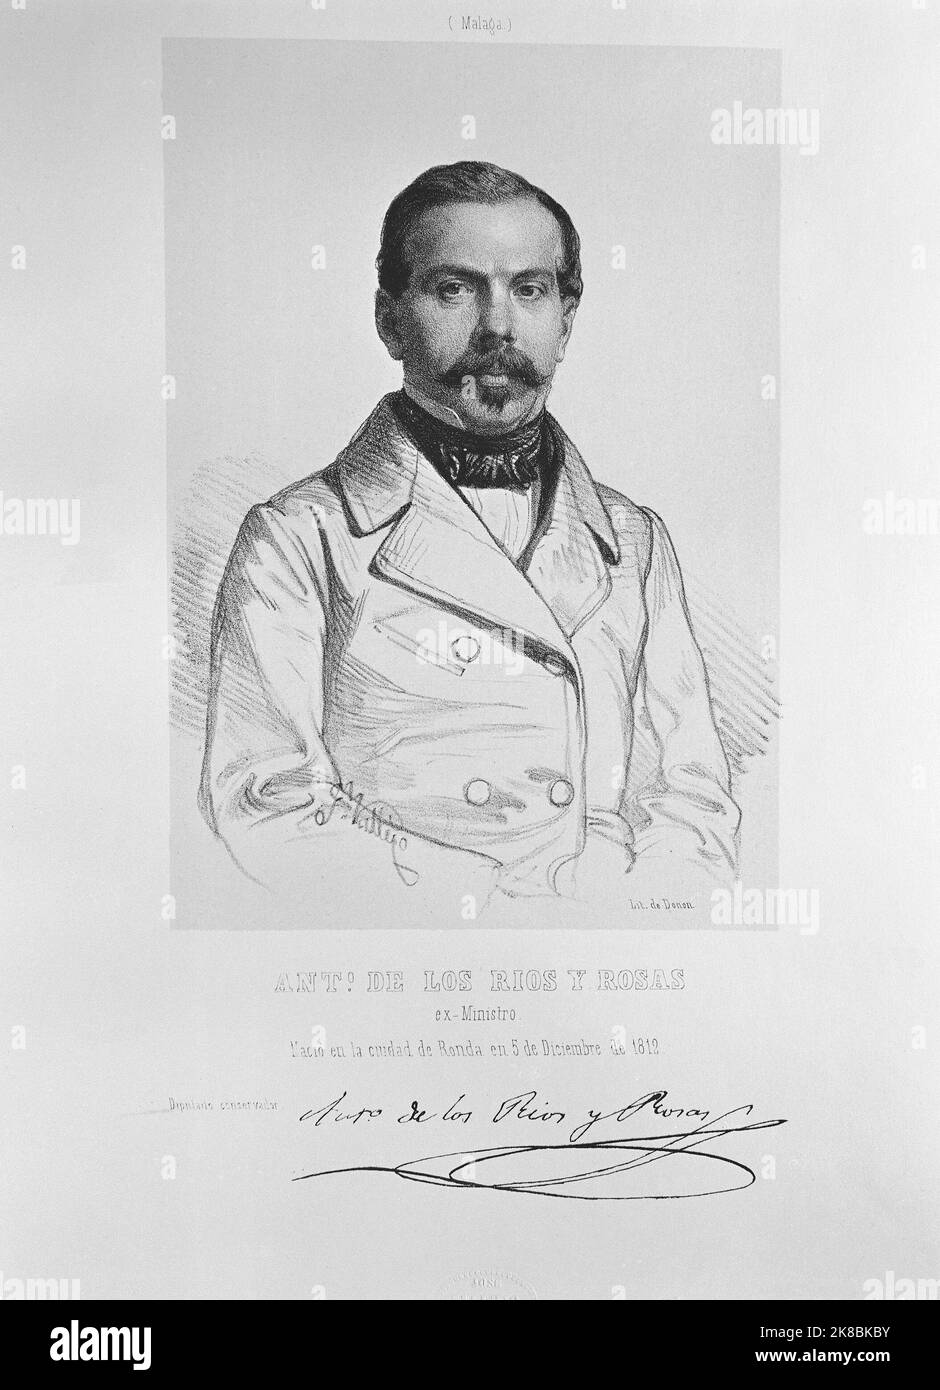 ANTONIO RIOS ROSAS 1812-1873- POLITICO ESPAÑOL CONSERVADOR- LITOGRAFIA POR J DONON. Author: JOSE VALLEJO Y GALEAZO. Stock Photo